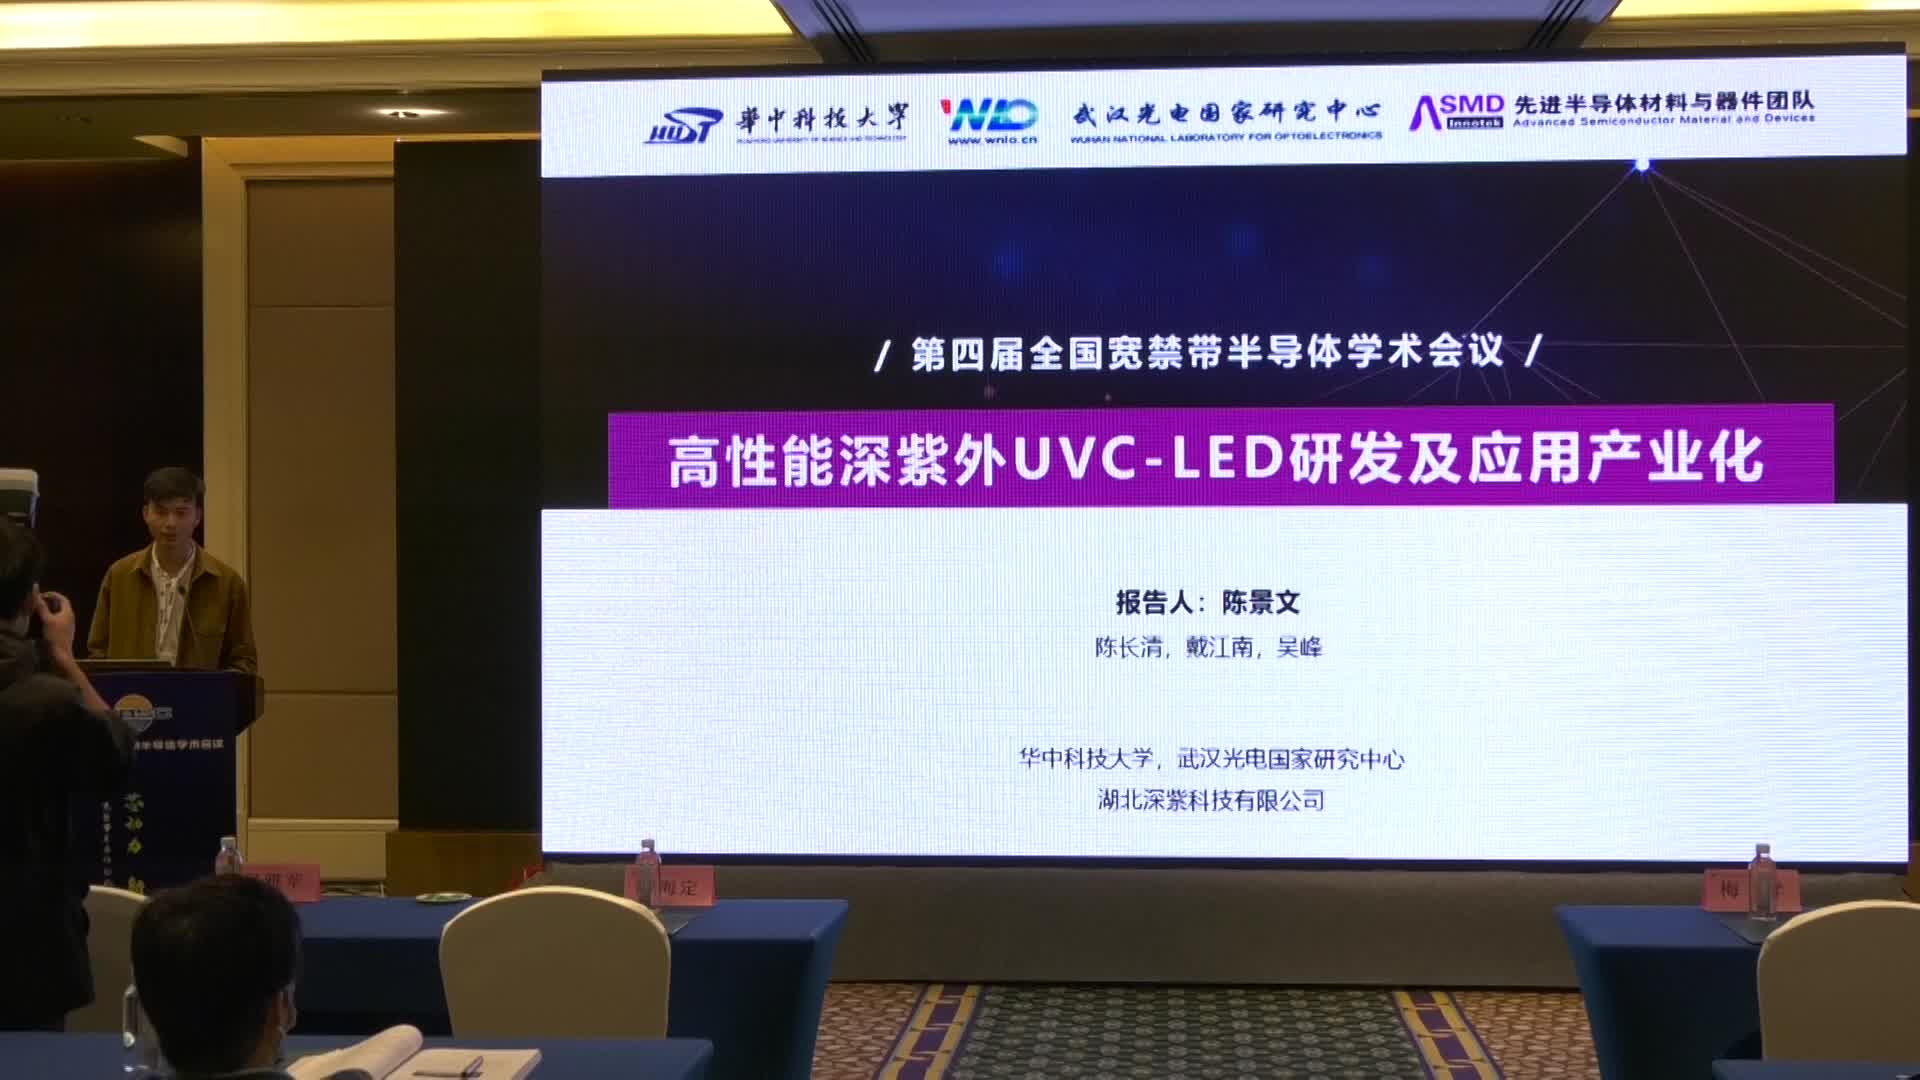 陈景文：高性能深紫外UVC-LED研发及应用产业化